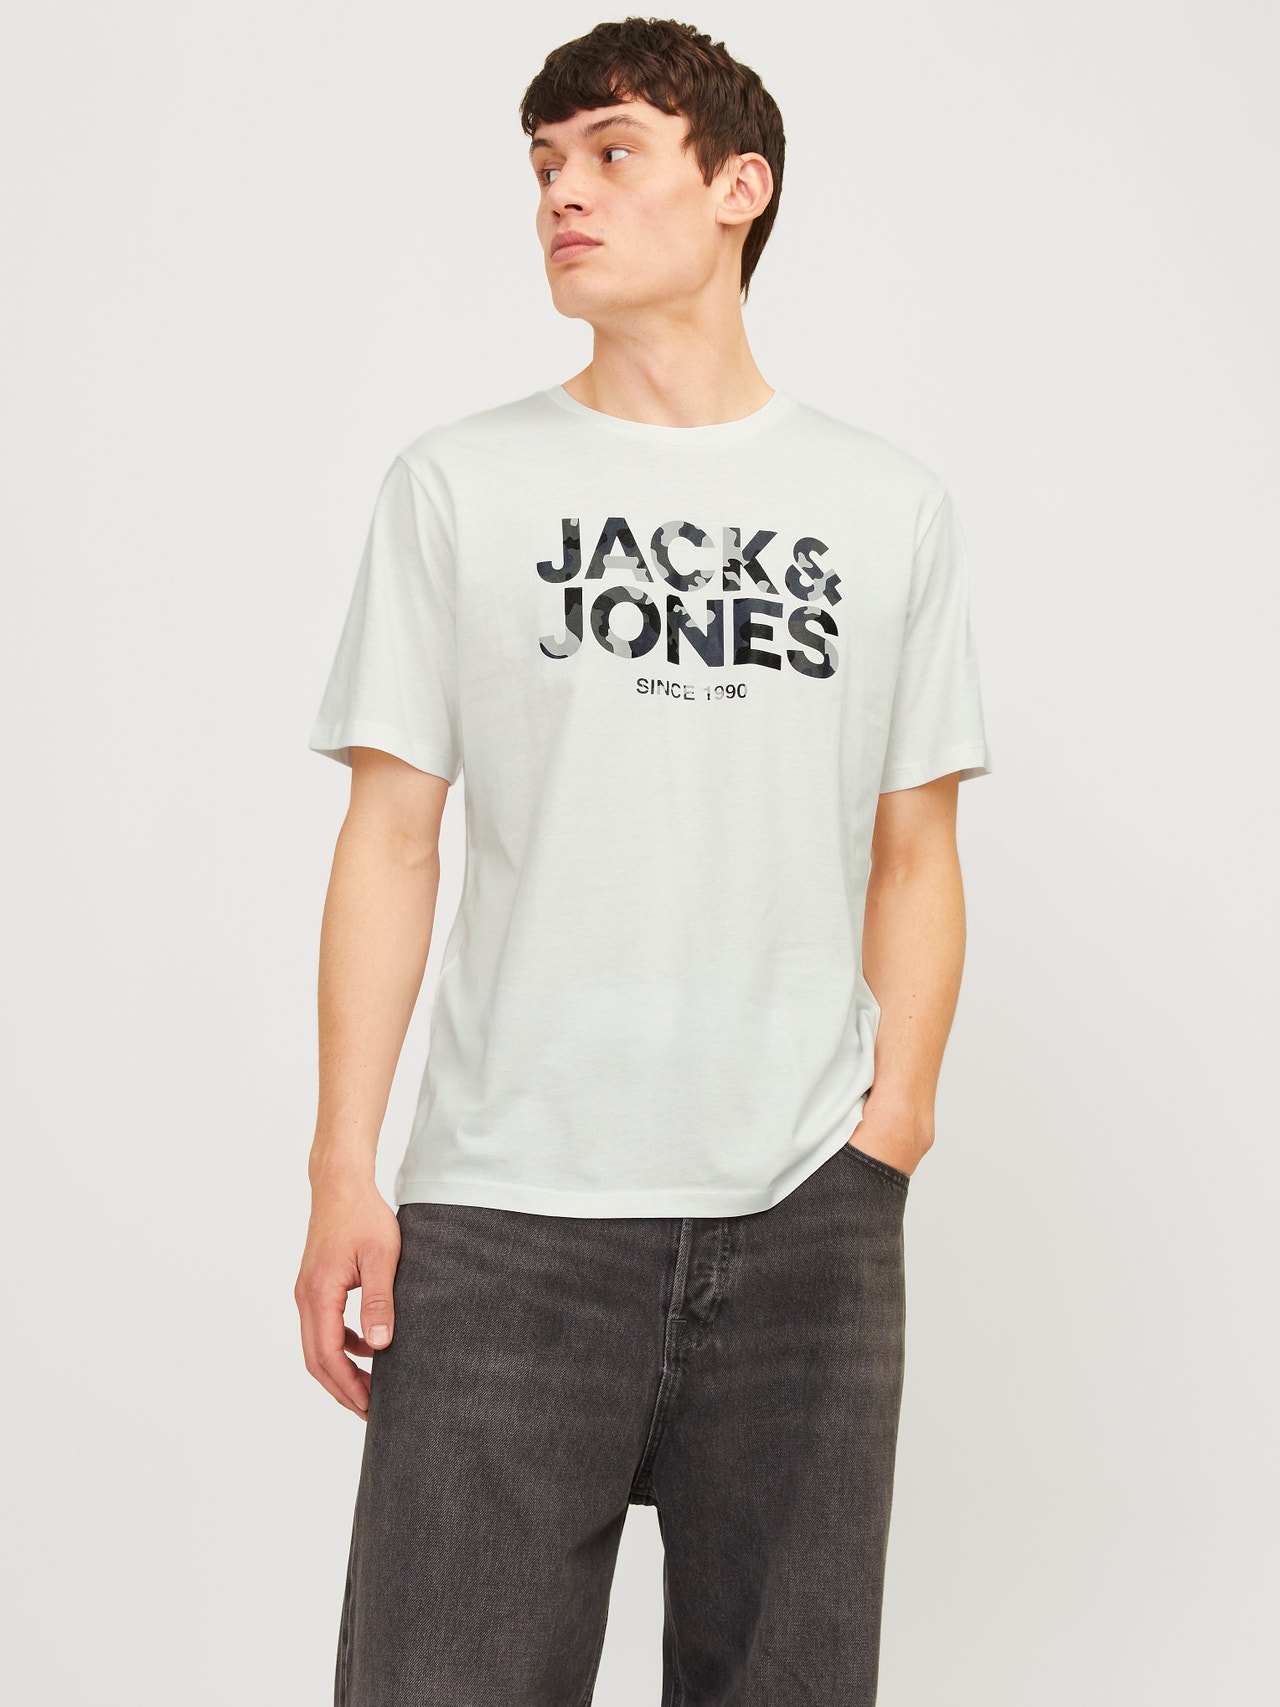 Jack & Jones Logo Crew neck T-shirt -Cloud Dancer - 12266155